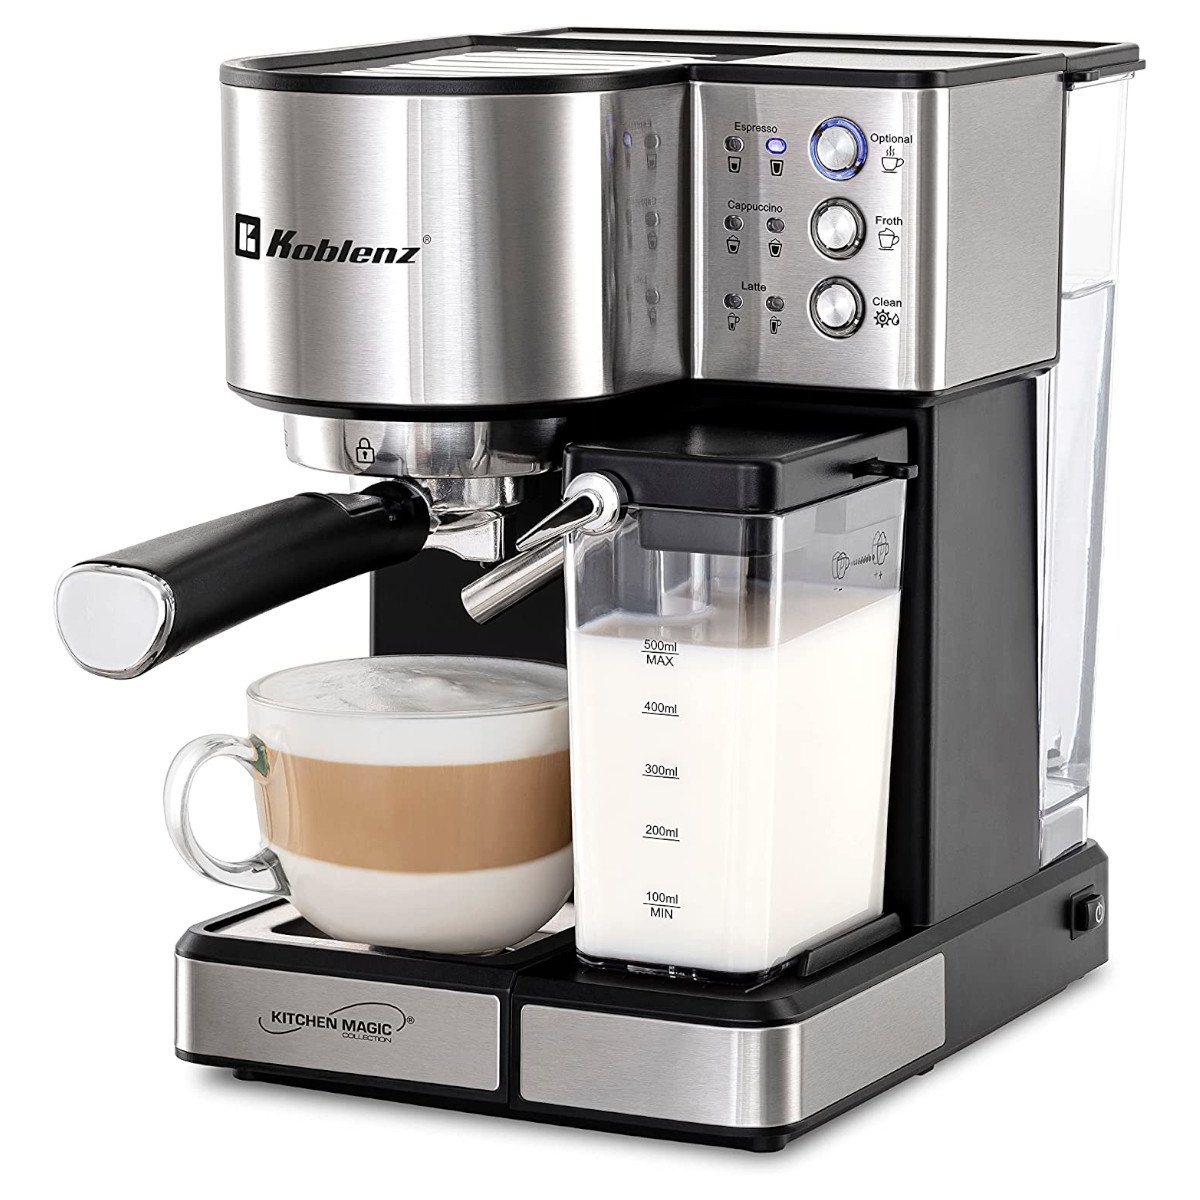 Máquina de Café Daewoo Espresso/Capuchino/Latte 15 Bar a precio de